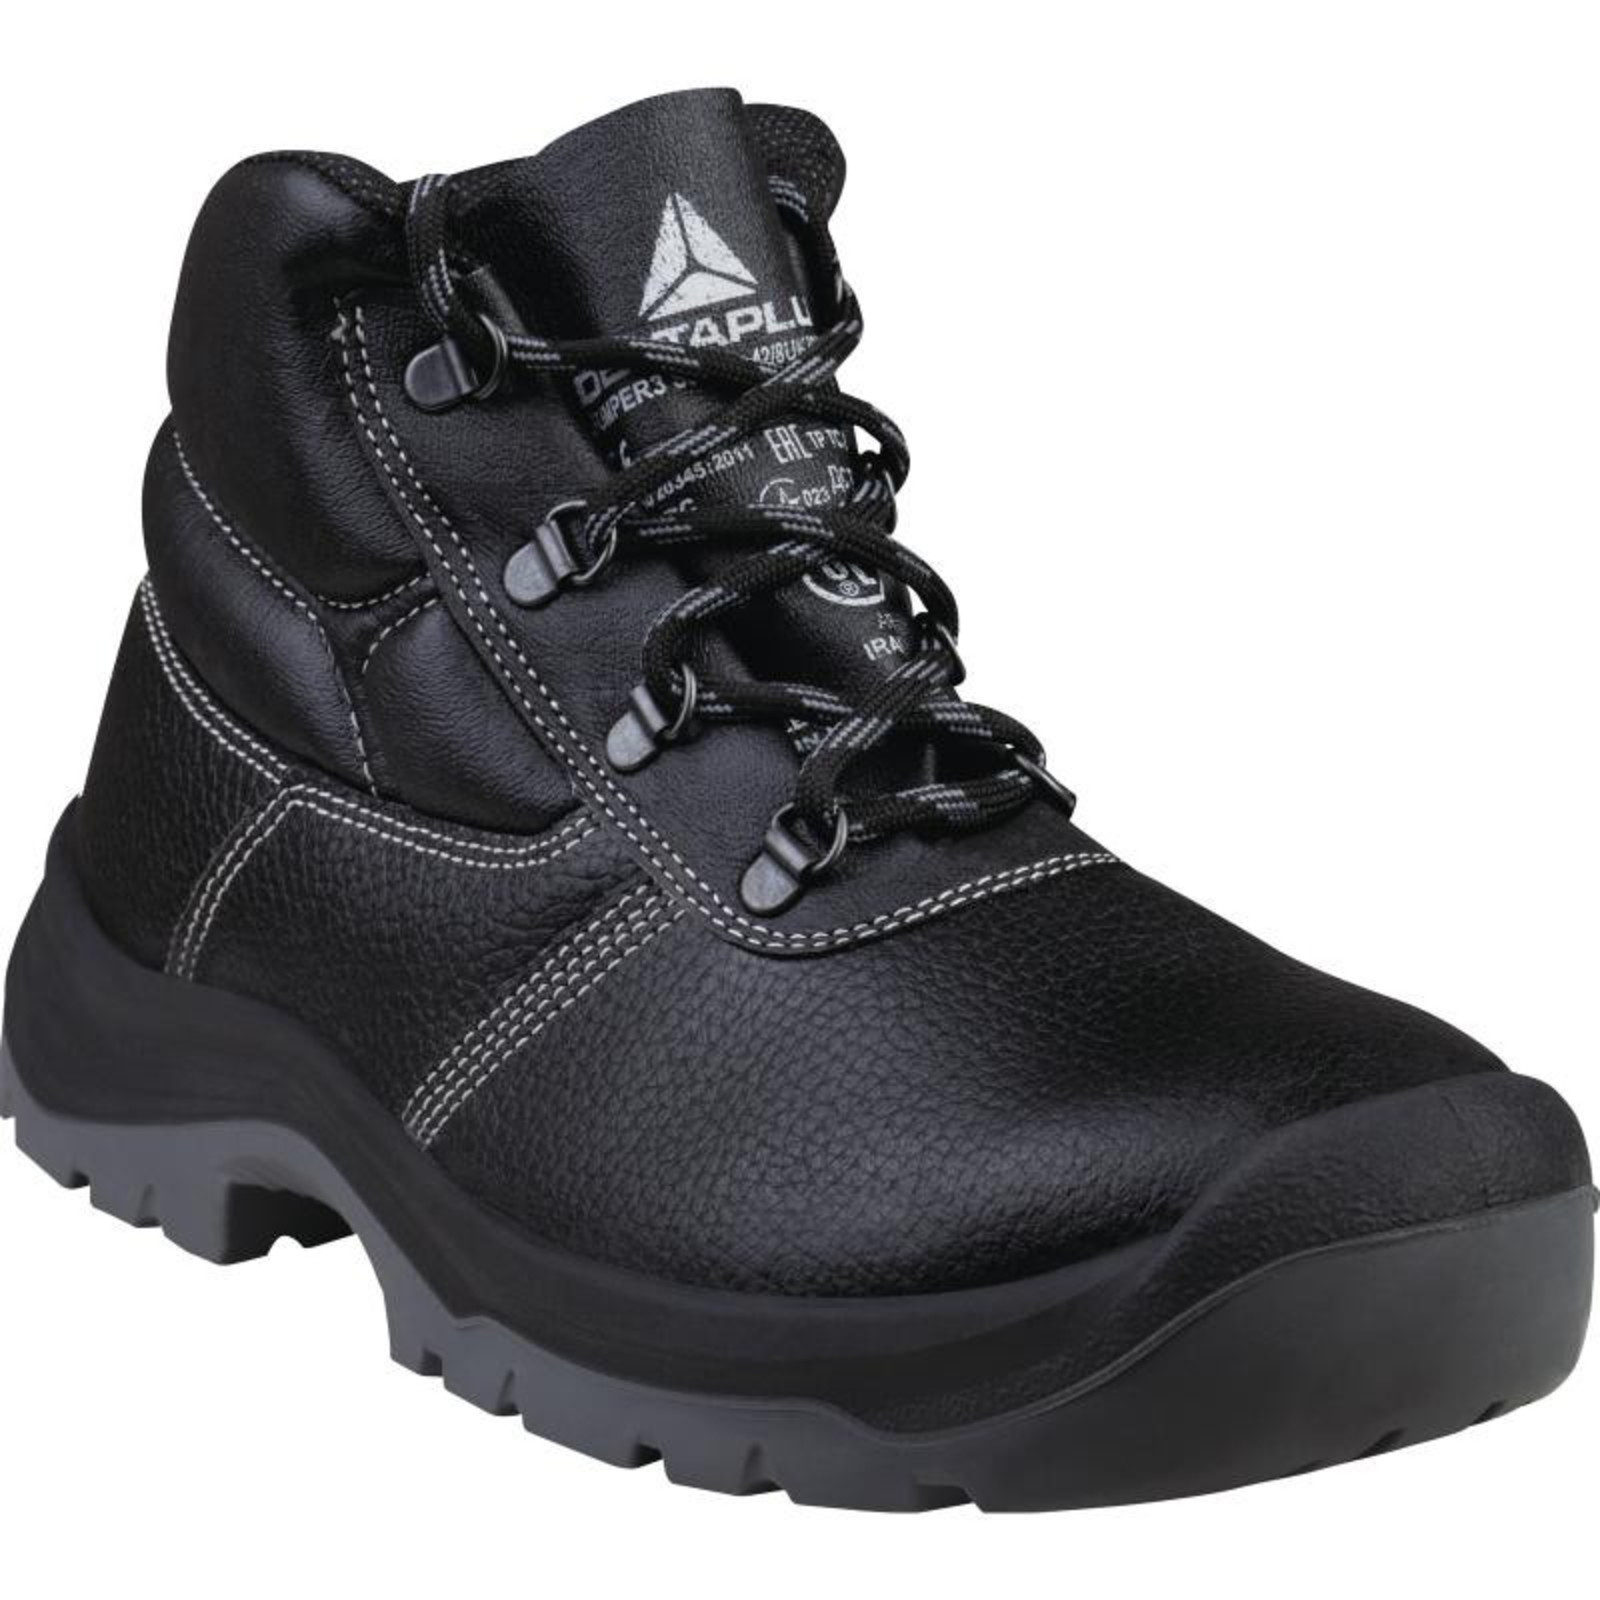 Členková bezpečnostná obuv Delta Plus Jumper3 S3 SRC - veľkosť: 38, farba: čierna